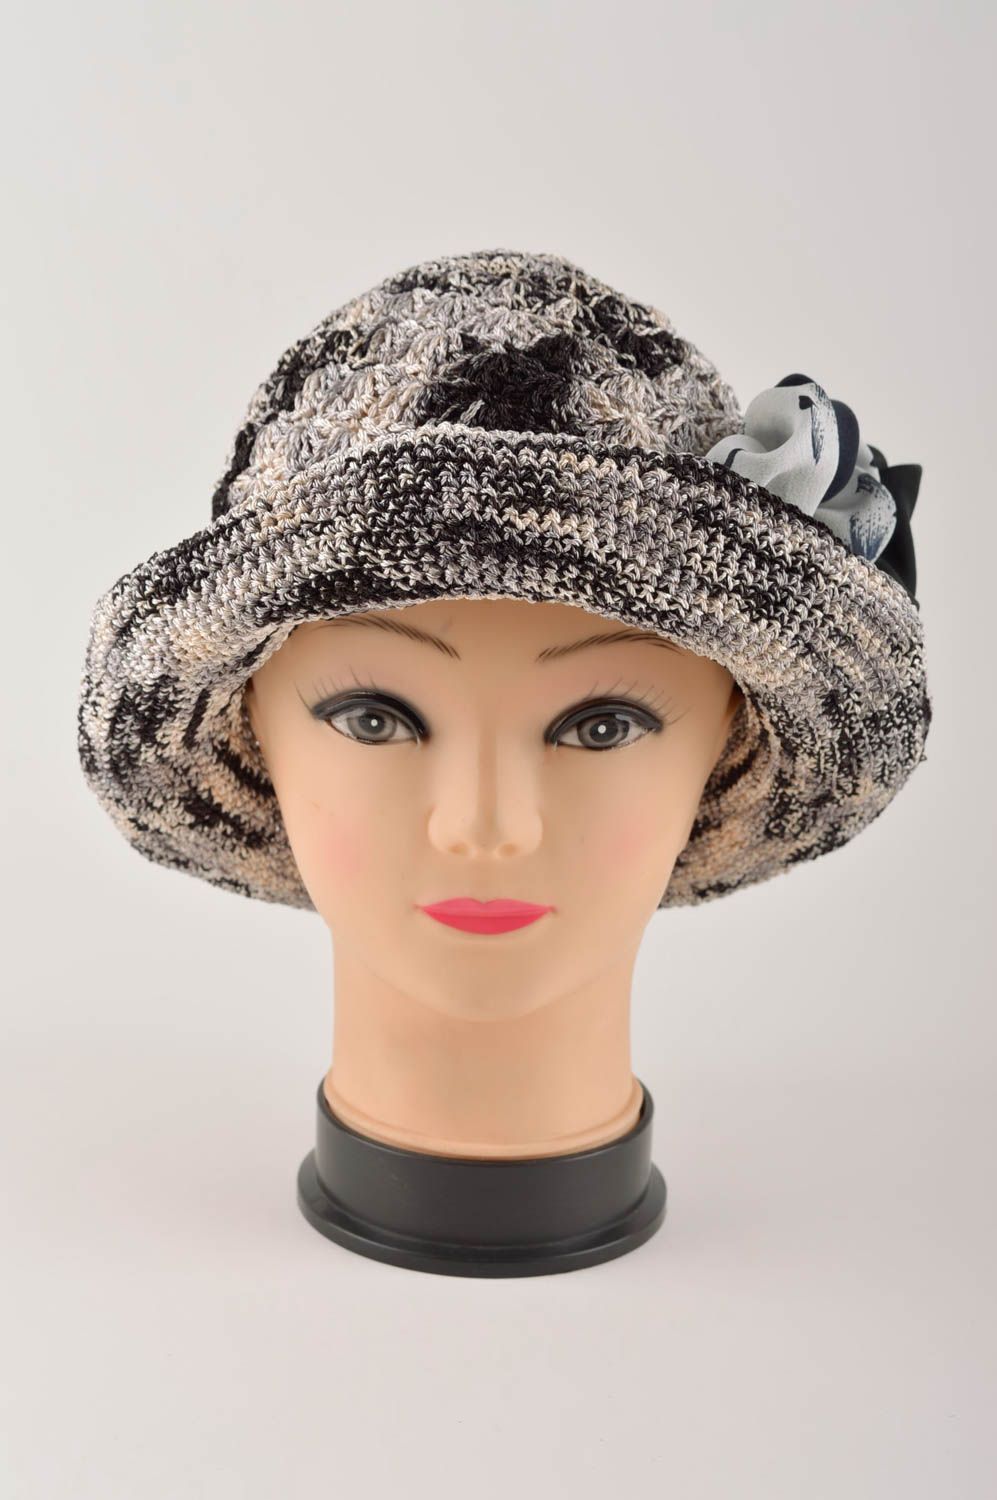 Handmade gehäkelter Hut Designer Accessoire Hut für Damen schöner Hut modisch foto 3